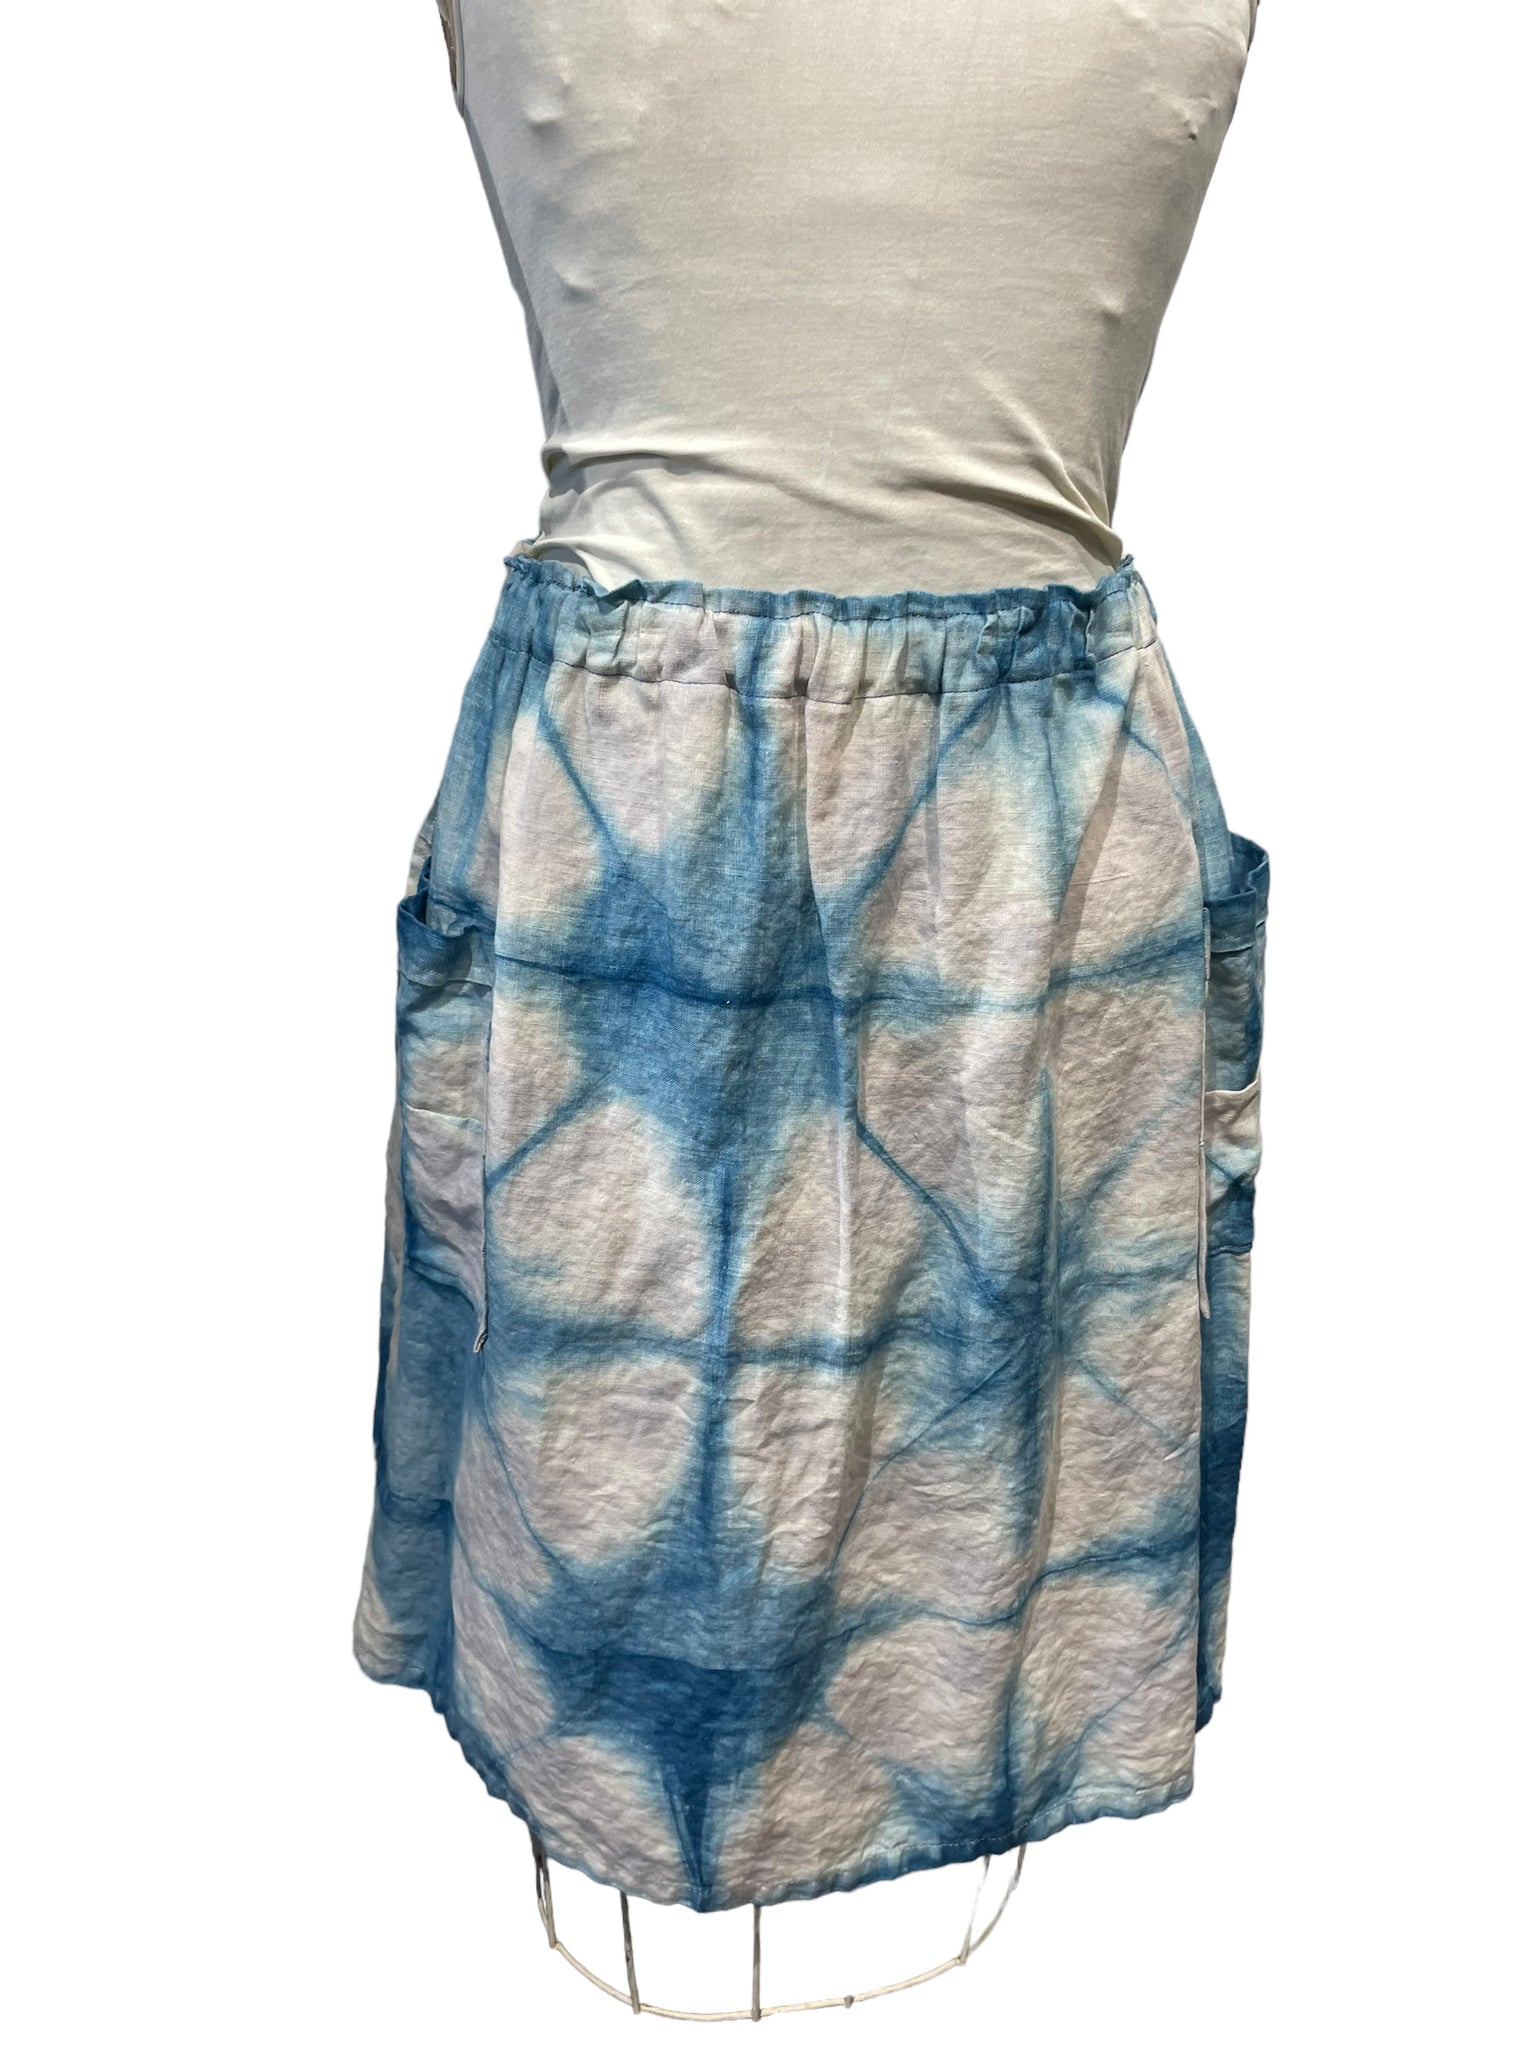 Linen skirt for the Urban nomad